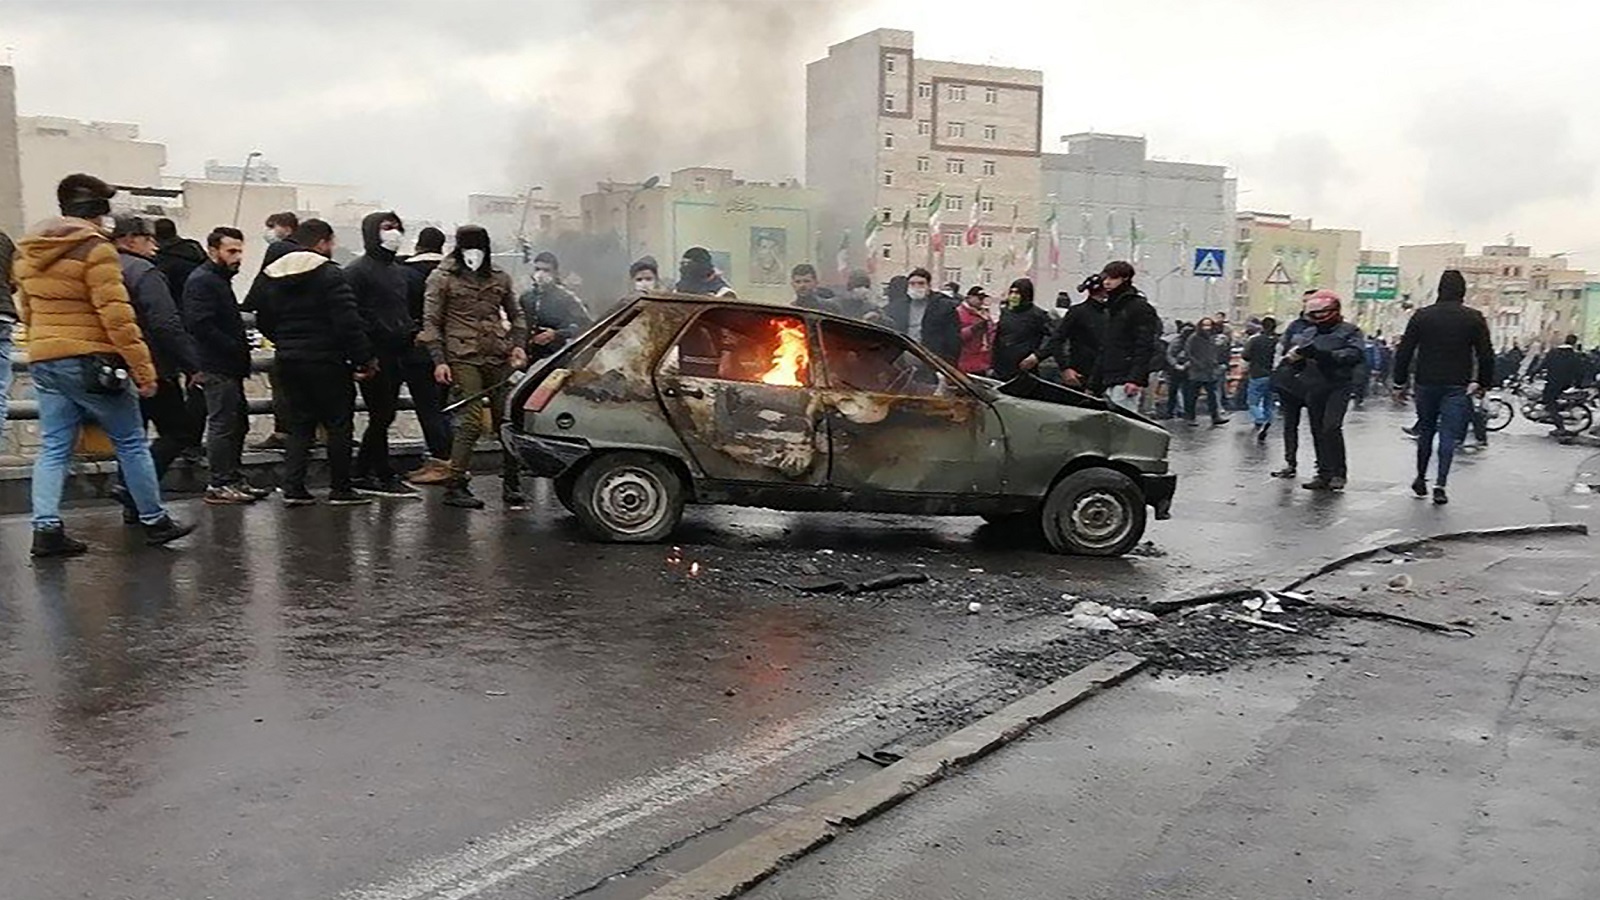 إيران: السلطة تهدد الاحتجاجات..بمعزوفة التدخل الخارجي